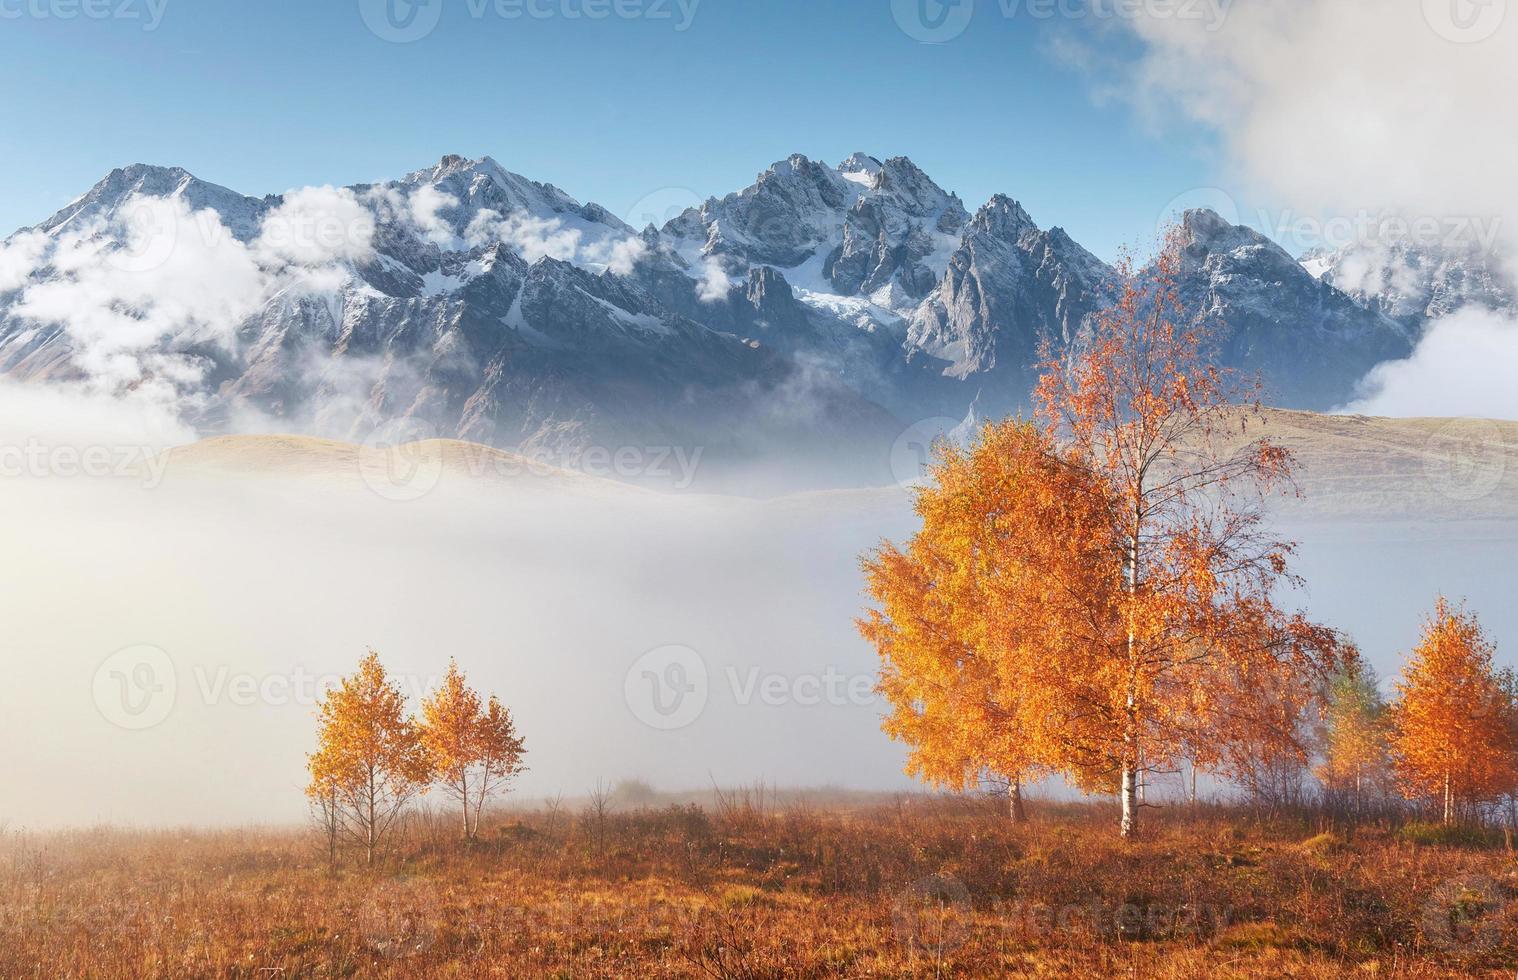 arbre brillant sur une pente de colline avec des poutres ensoleillées dans une vallée de montagne couverte de brouillard. magnifique scène du matin. feuilles d'automne rouges et jaunes. carpates, ukraine, europe. découvrir le monde de la beauté photo